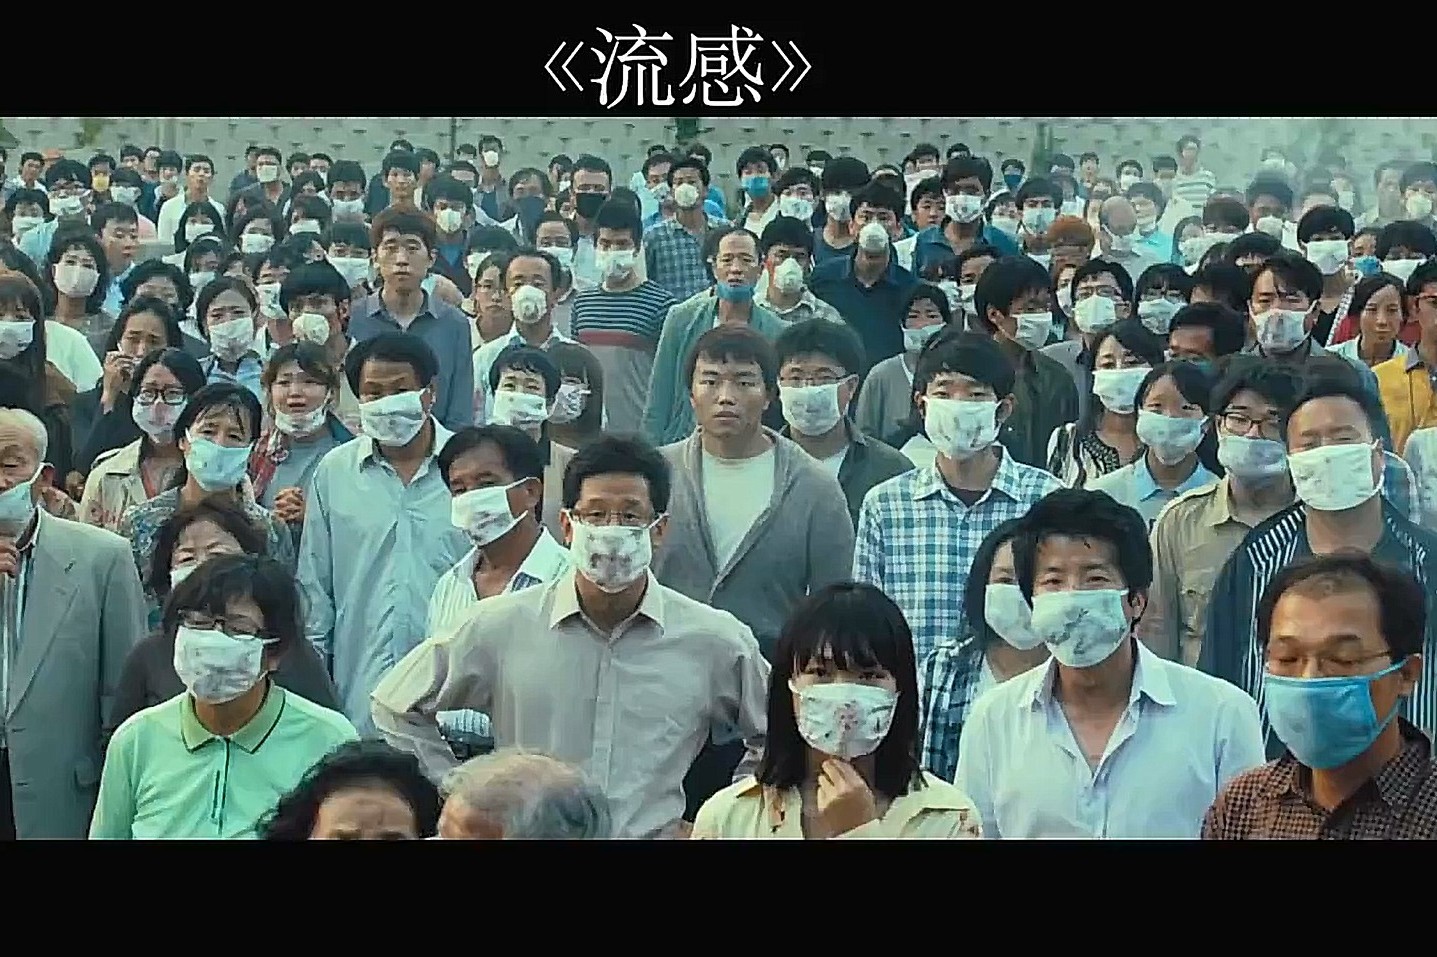 几分钟看完高分韩国灾难电影流感猪流感袭击韩国某城的故事